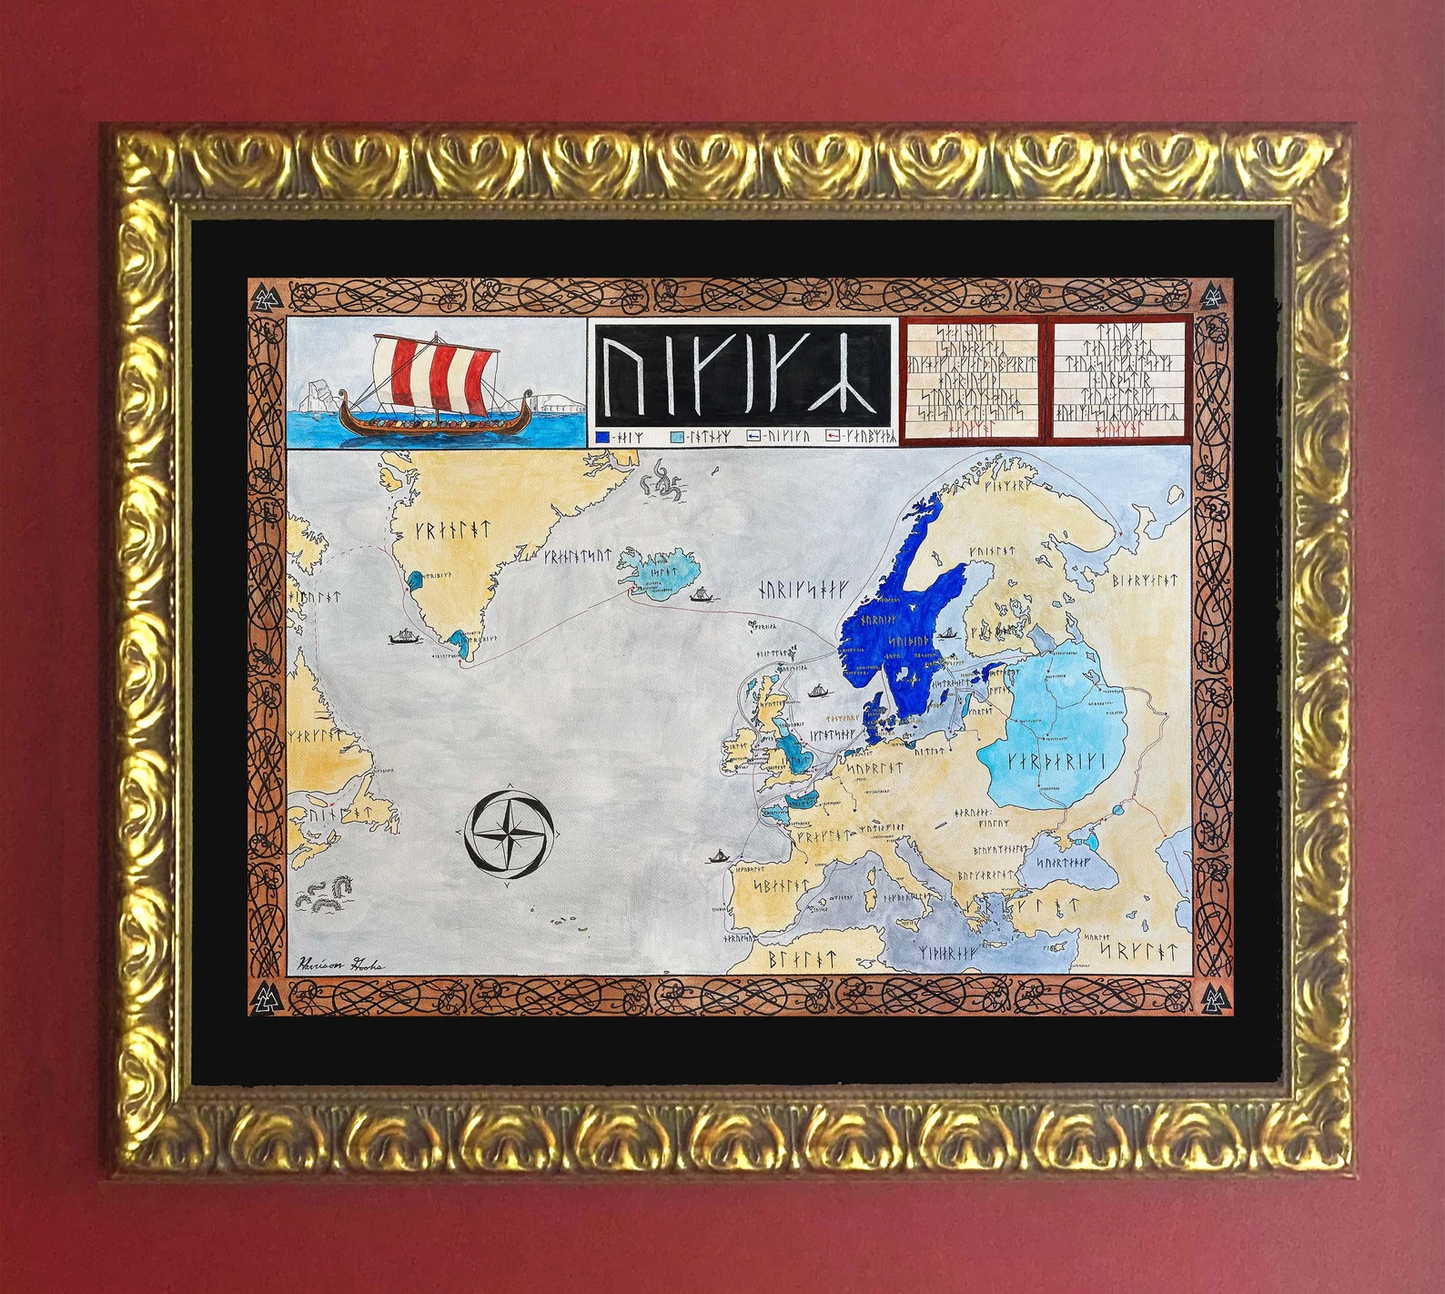 Viking Map; Runes Map of Viking Expansion